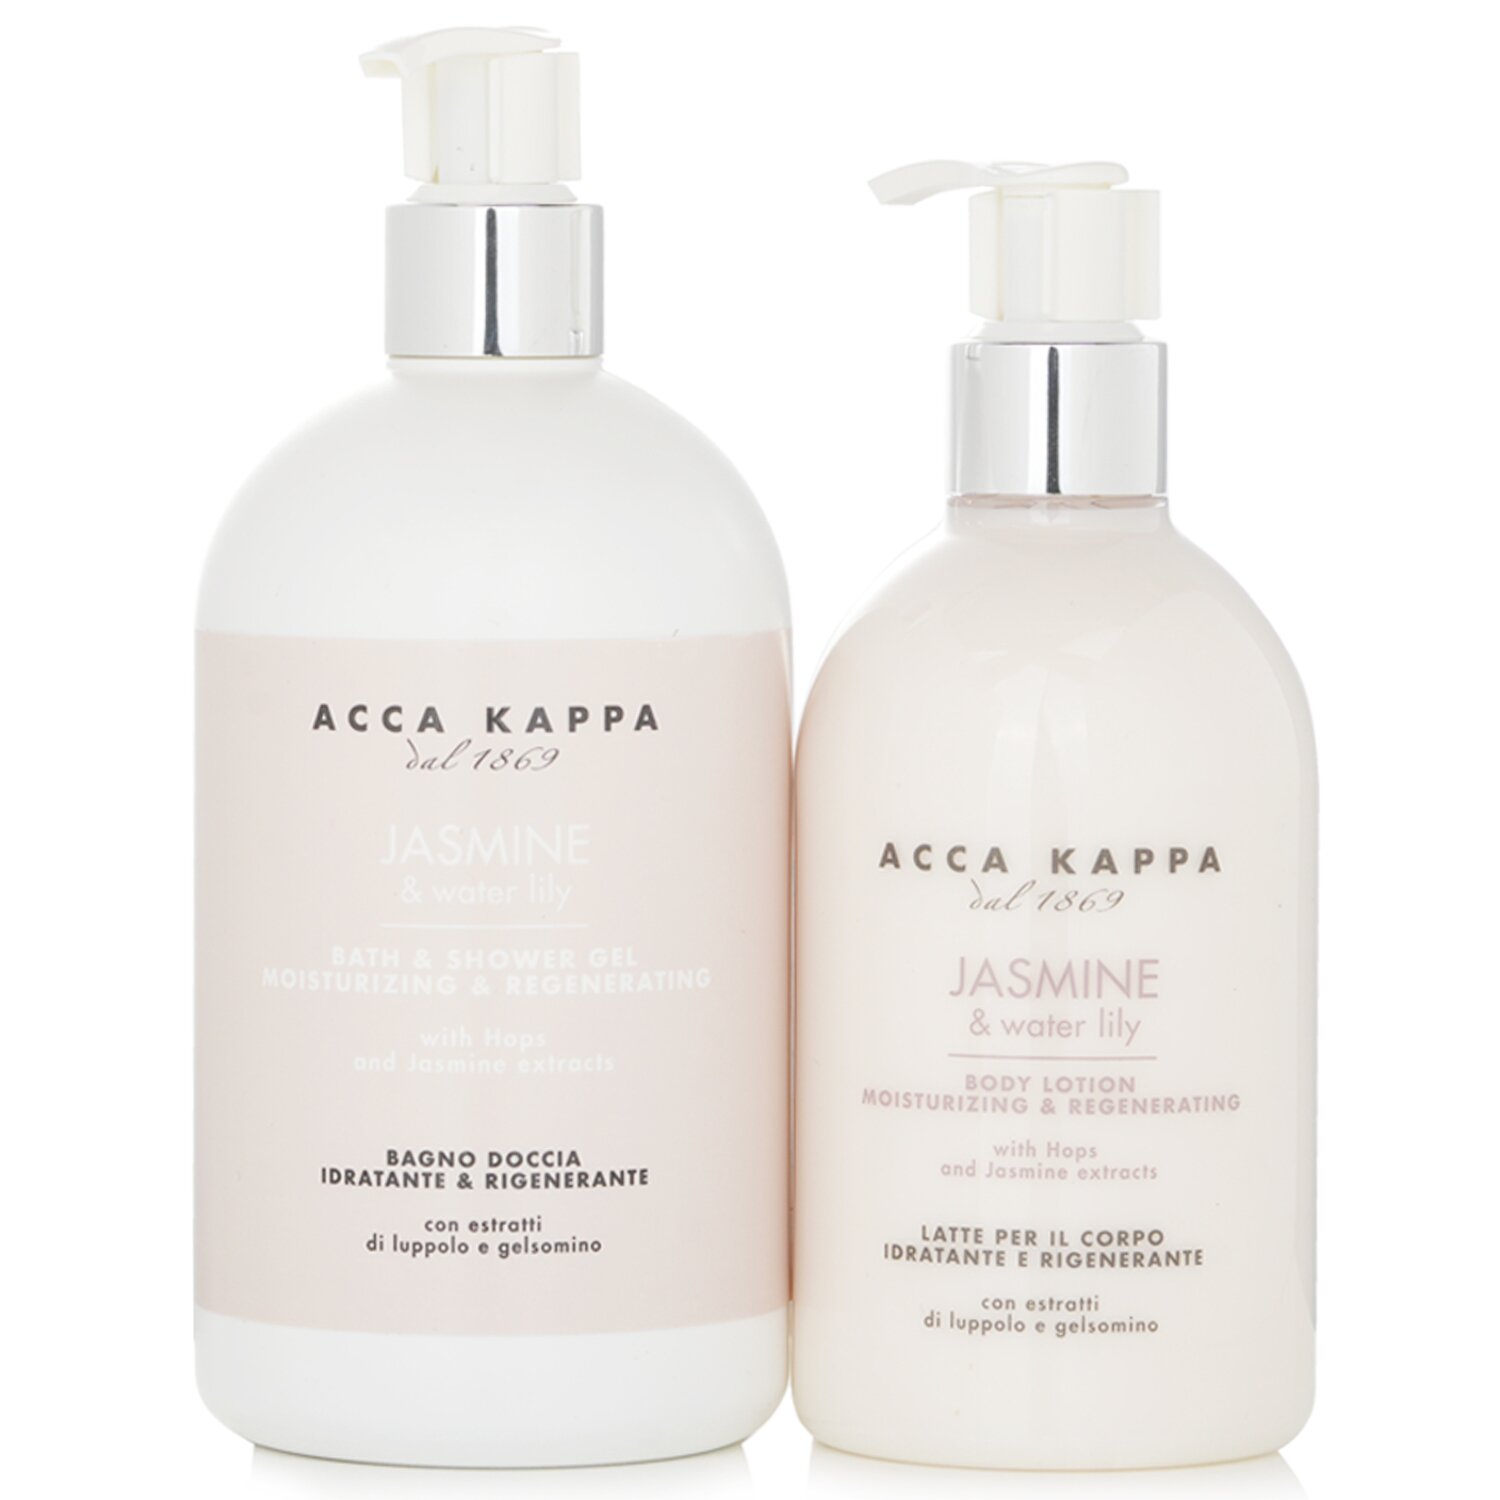 艾卡卡帕 Acca Kappa - 茉莉睡蓮身體護理禮盒套裝